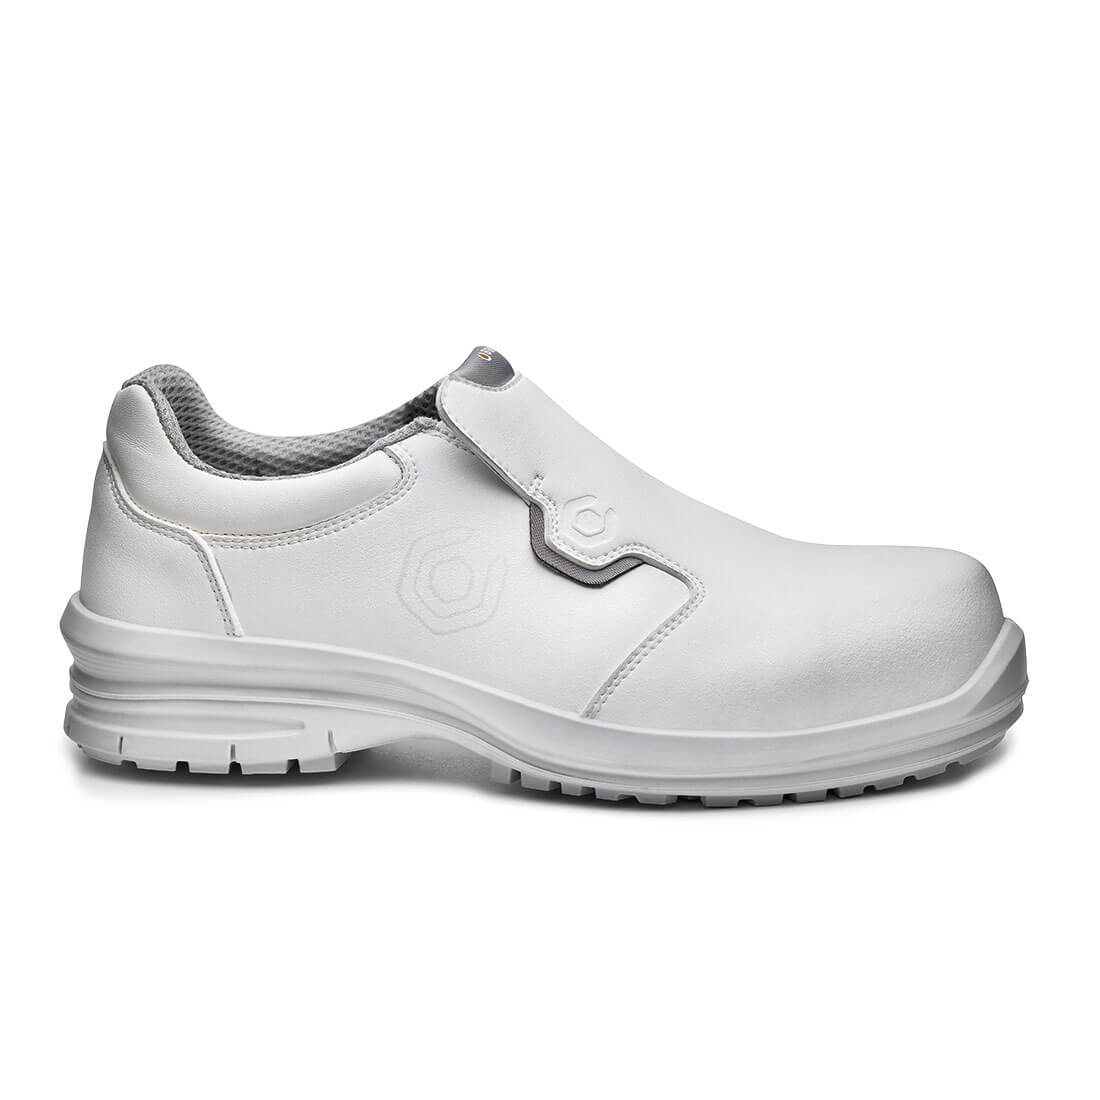 Kuma Hygiene Safety Boots White- B0962X